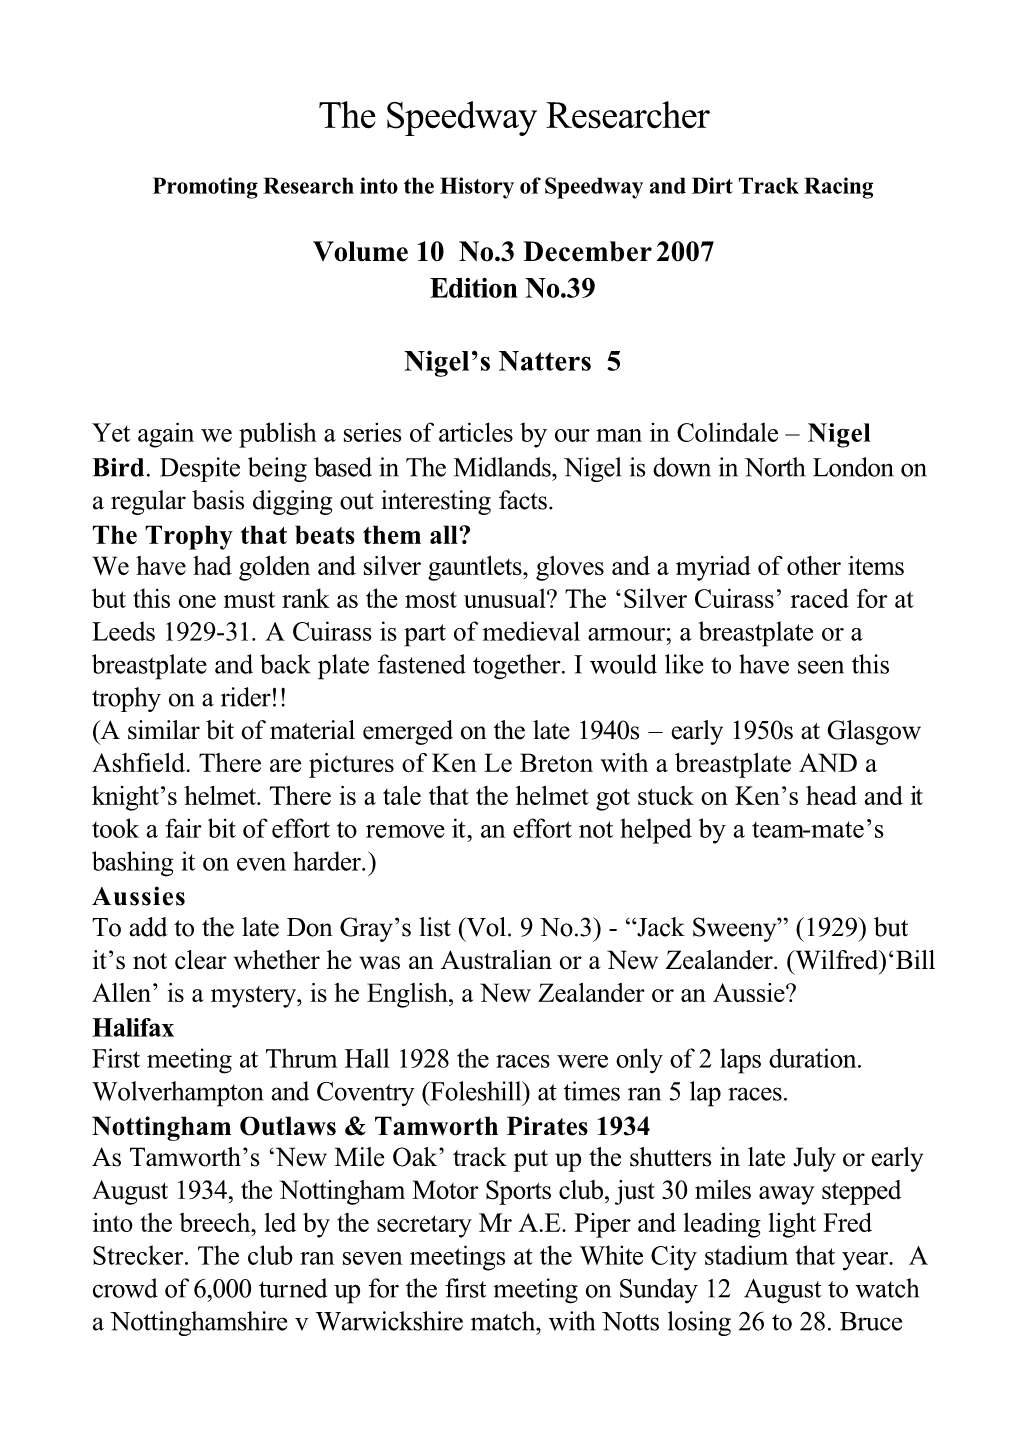 Volume 10 No.3 December 2007 Edition No.39